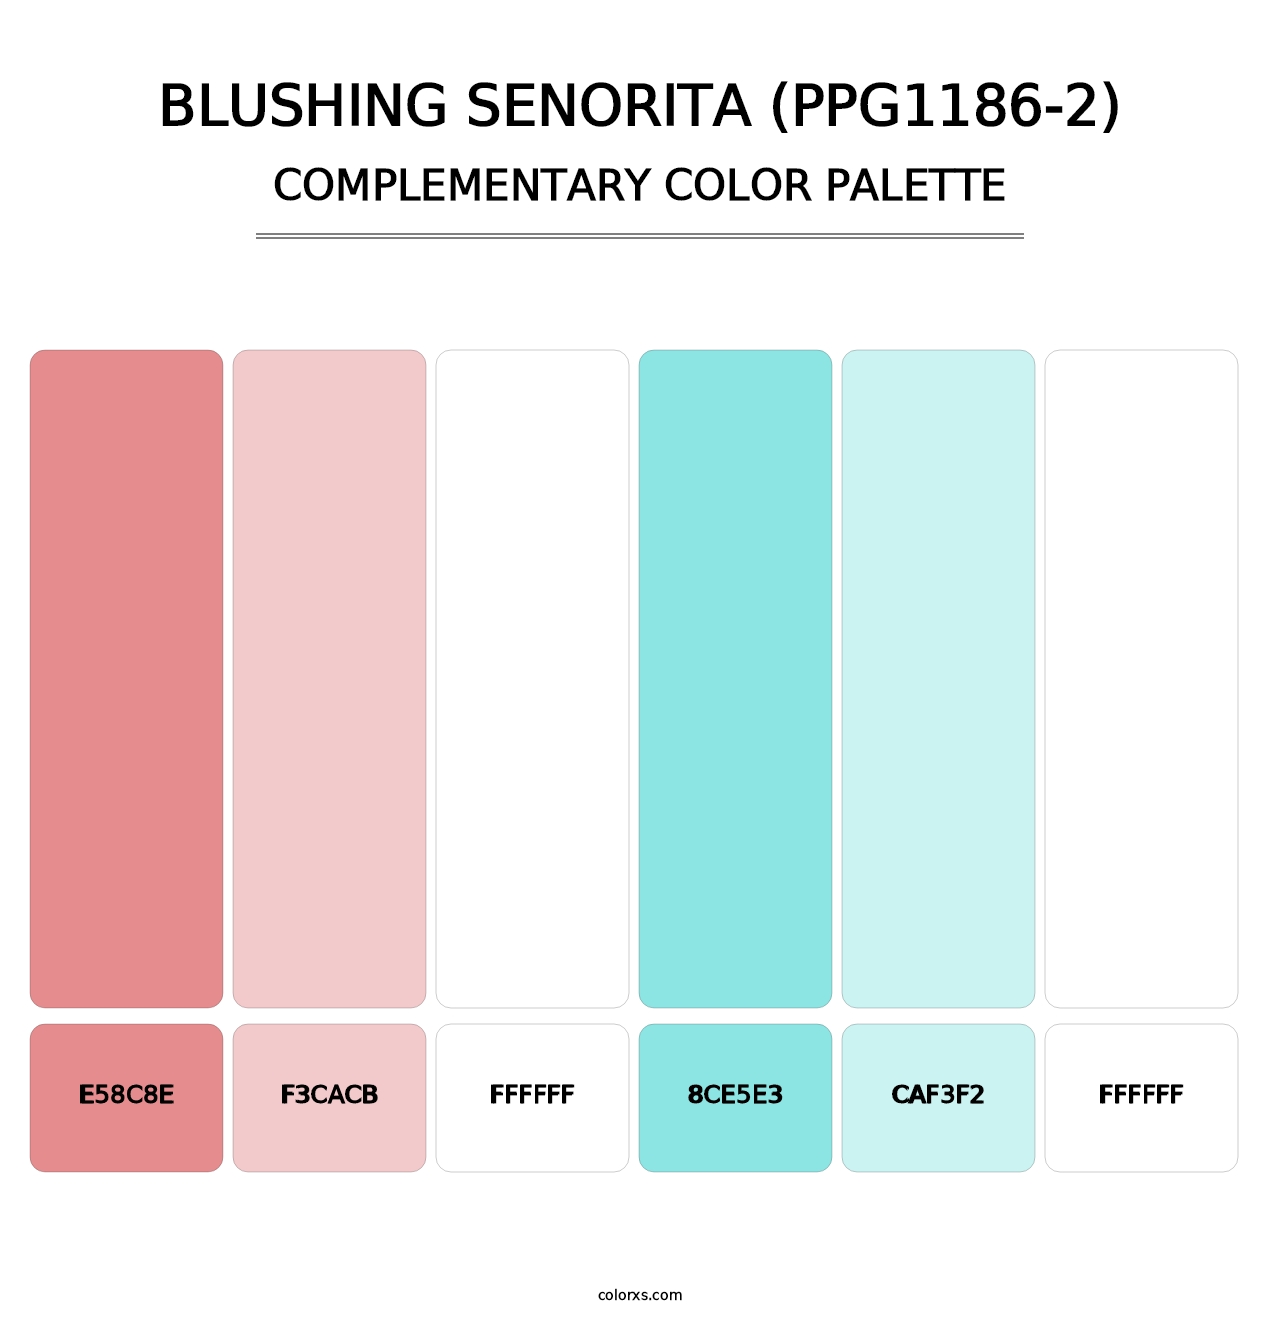 Blushing Senorita (PPG1186-2) - Complementary Color Palette